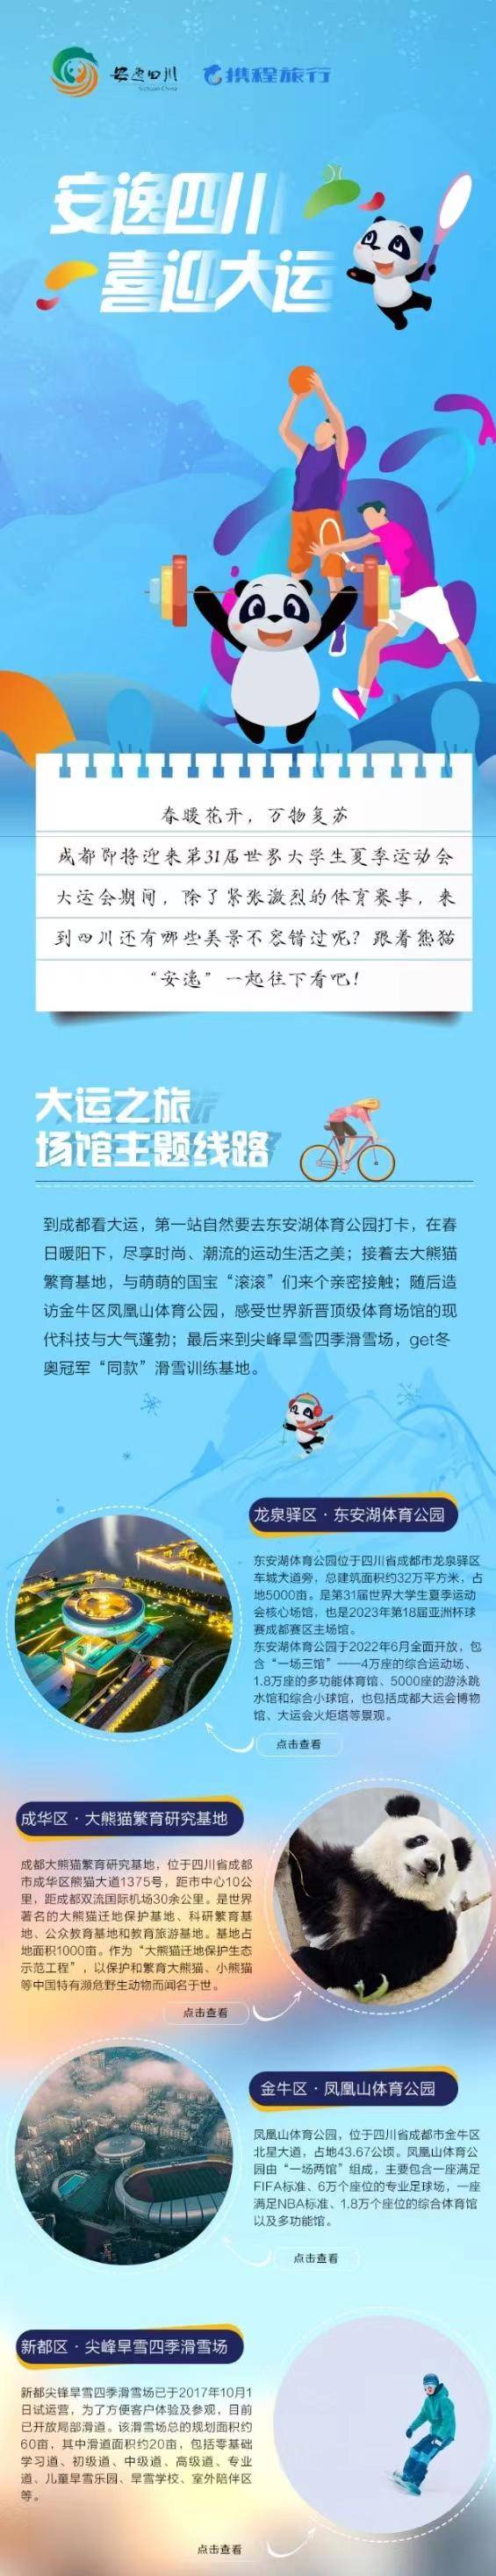 携手同行 趣游安逸 携程创新盲盒玩法为四川文旅品牌形象持续赋能